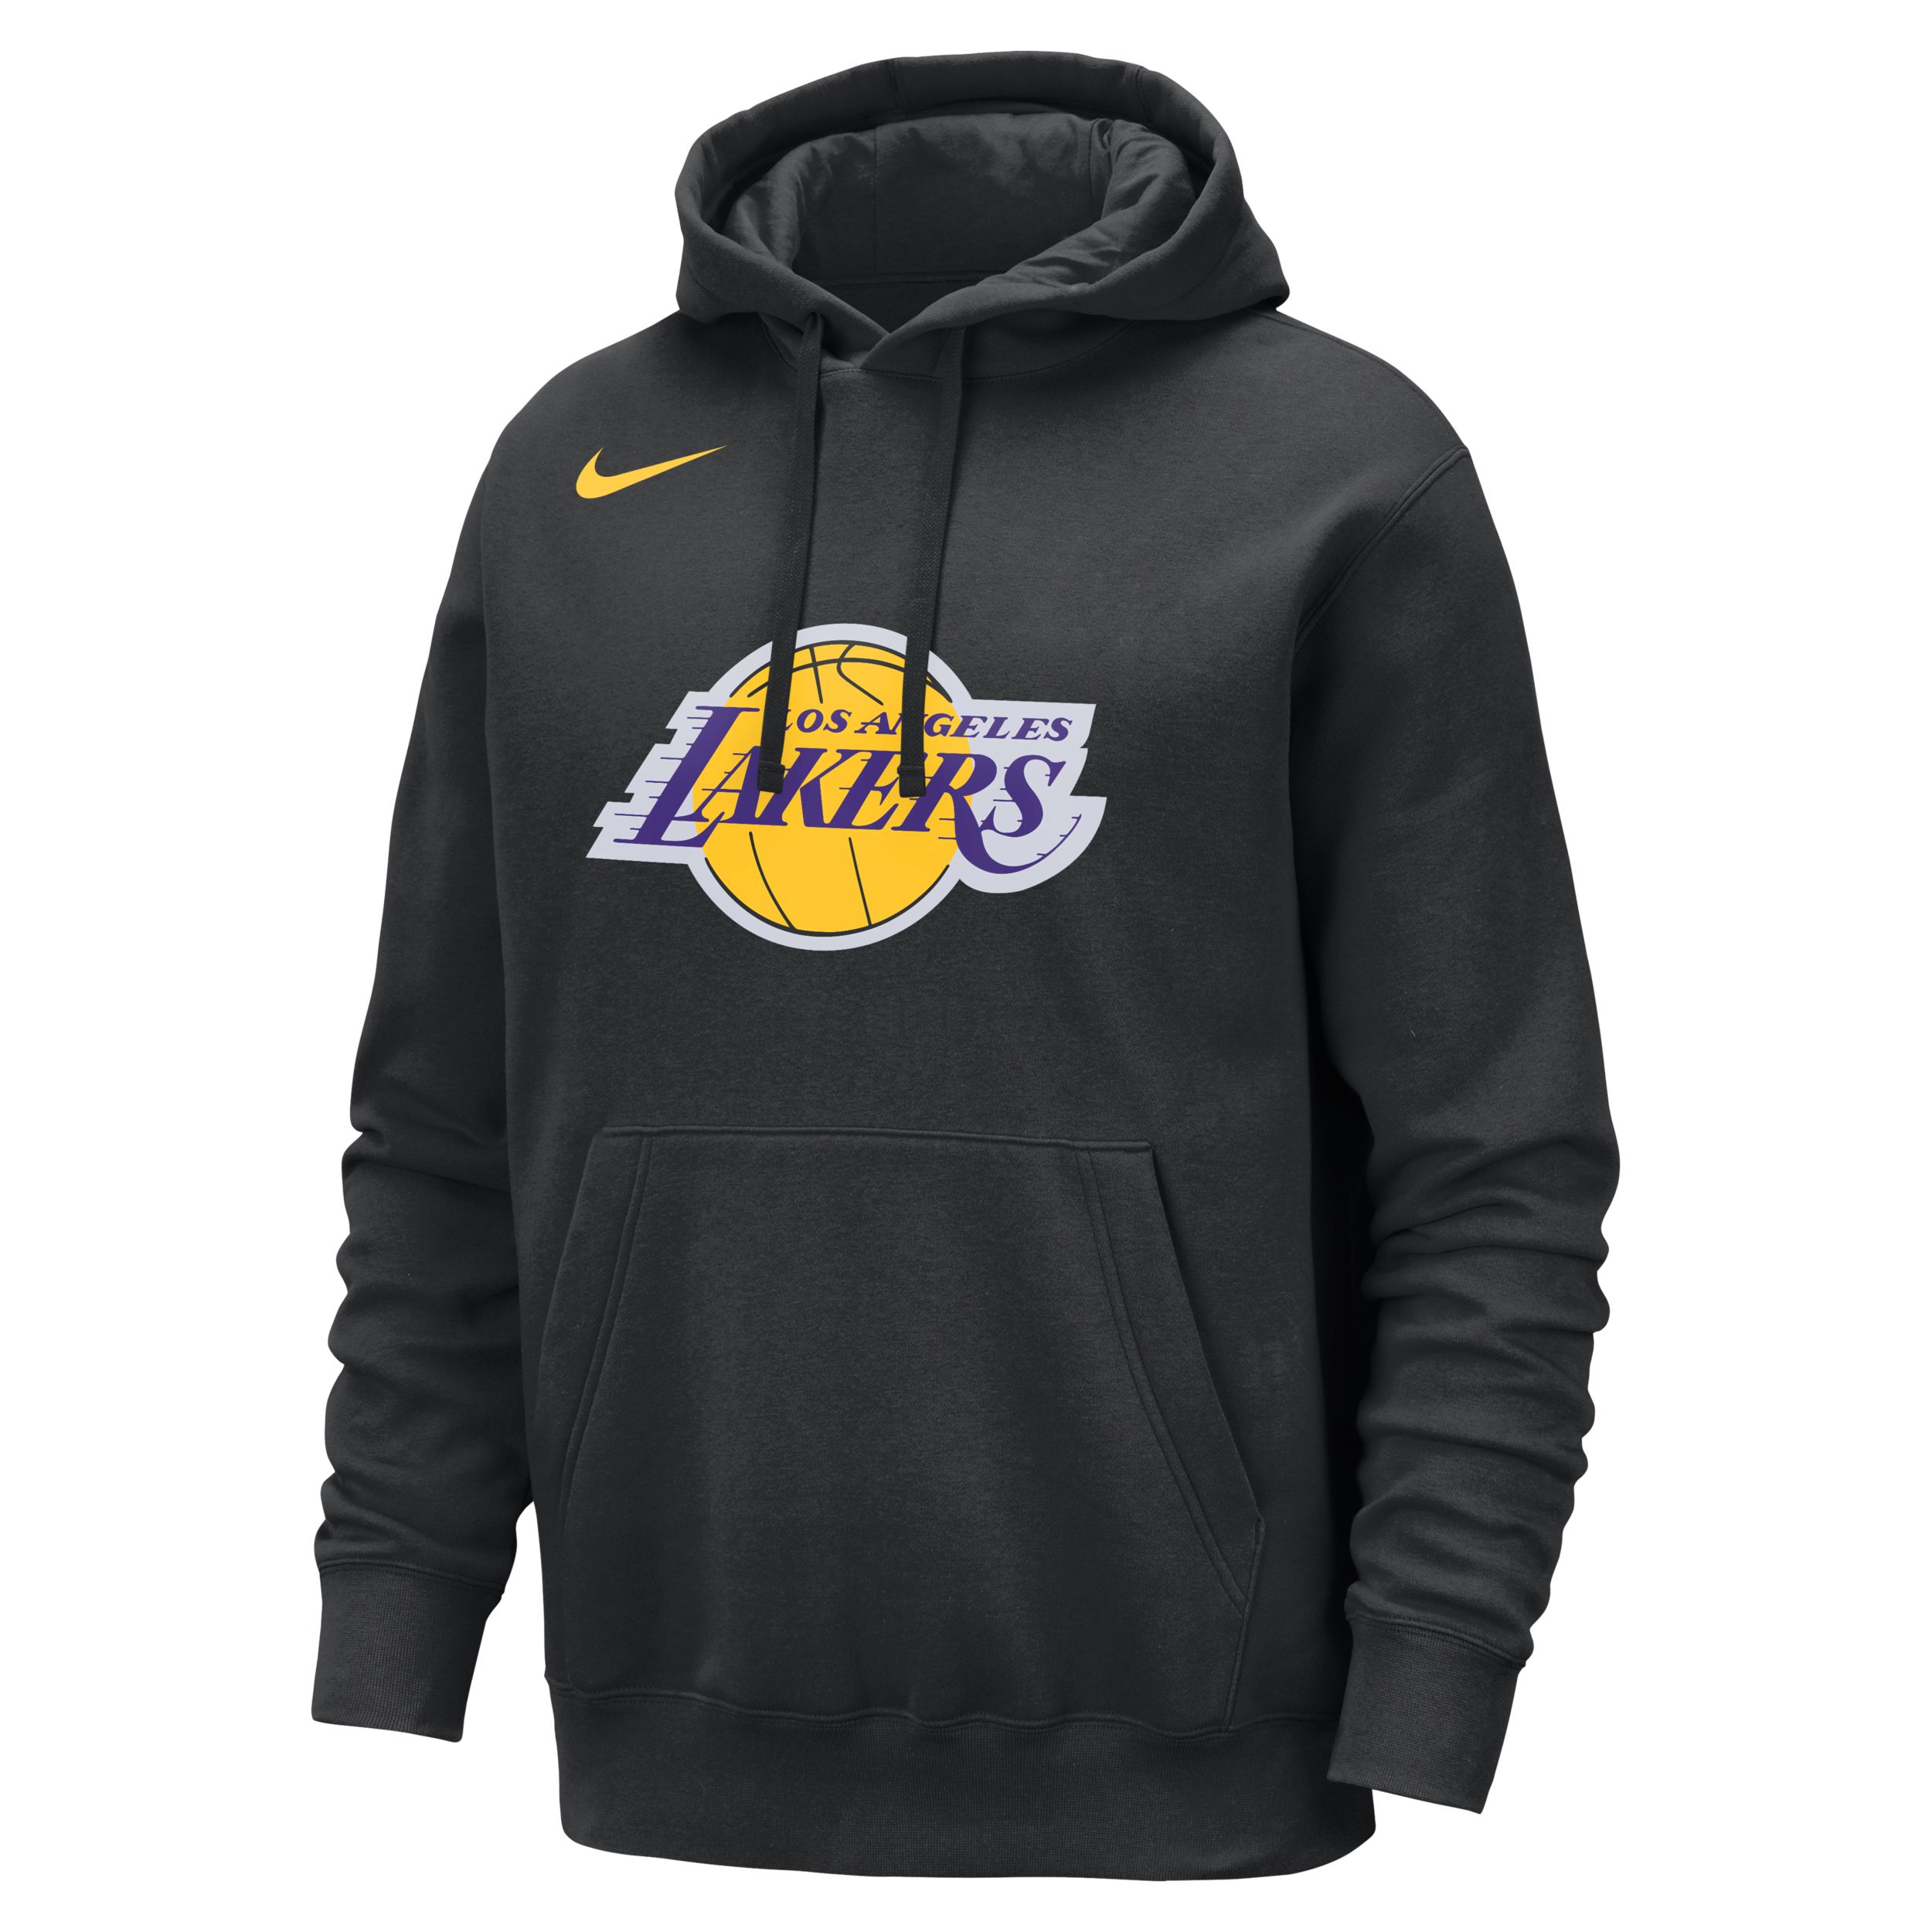 Los Angeles Lakers Club Sudadera con capucha Nike de la NBA - Hombre - Negro